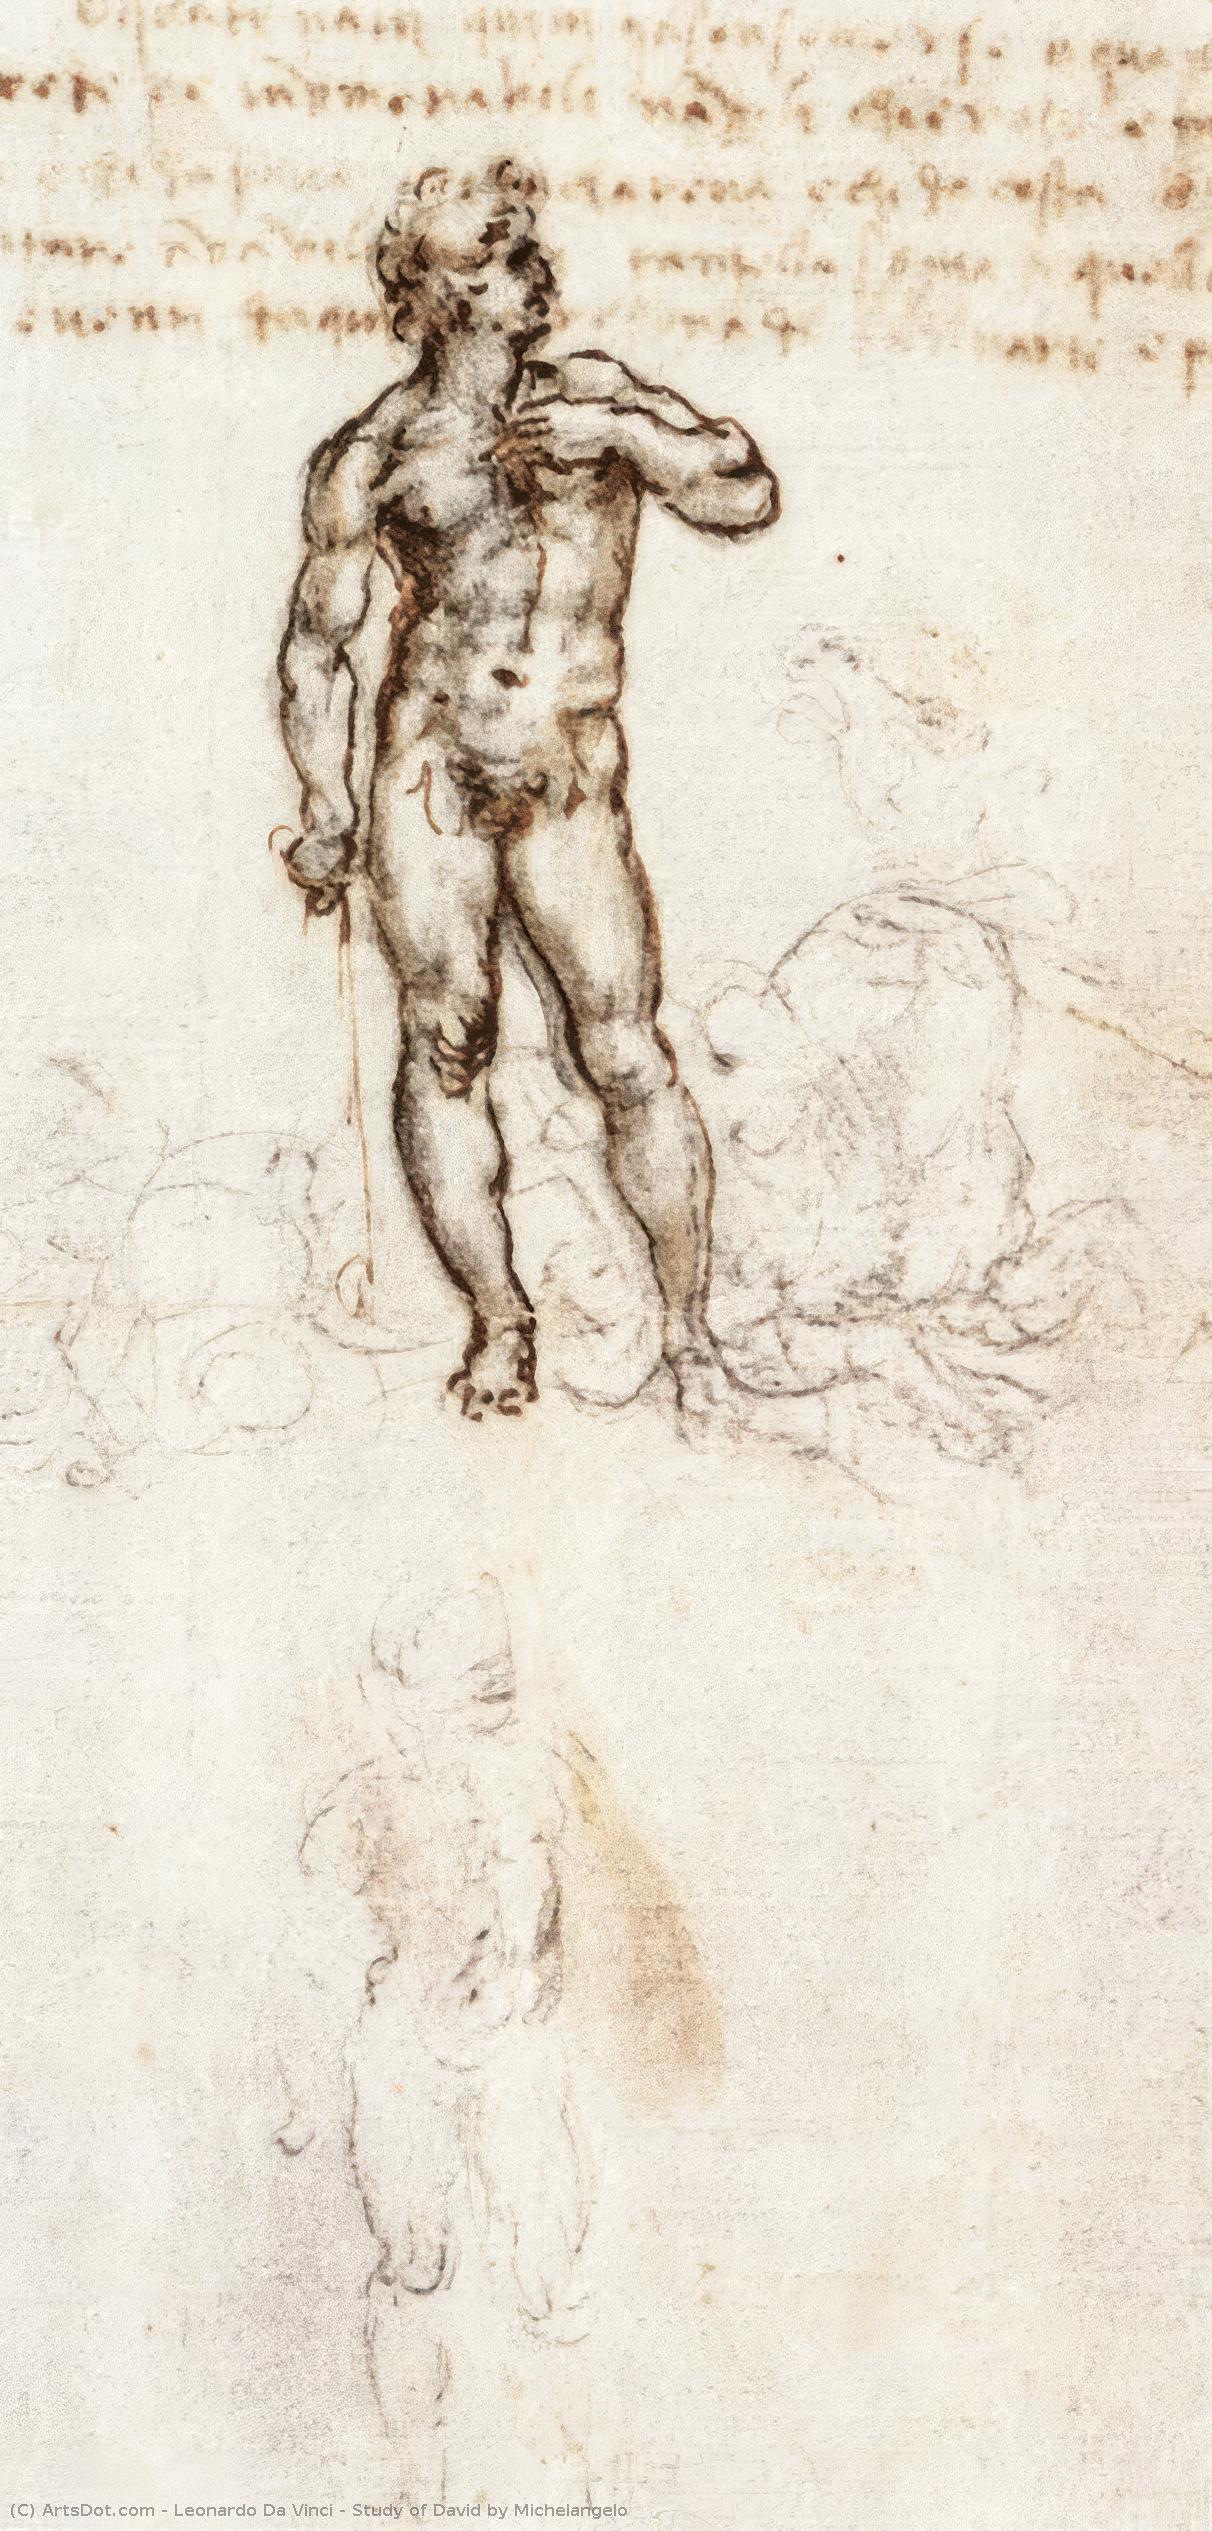 WikiOO.org - Enciklopedija likovnih umjetnosti - Slikarstvo, umjetnička djela Leonardo Da Vinci - Study of David by Michelangelo